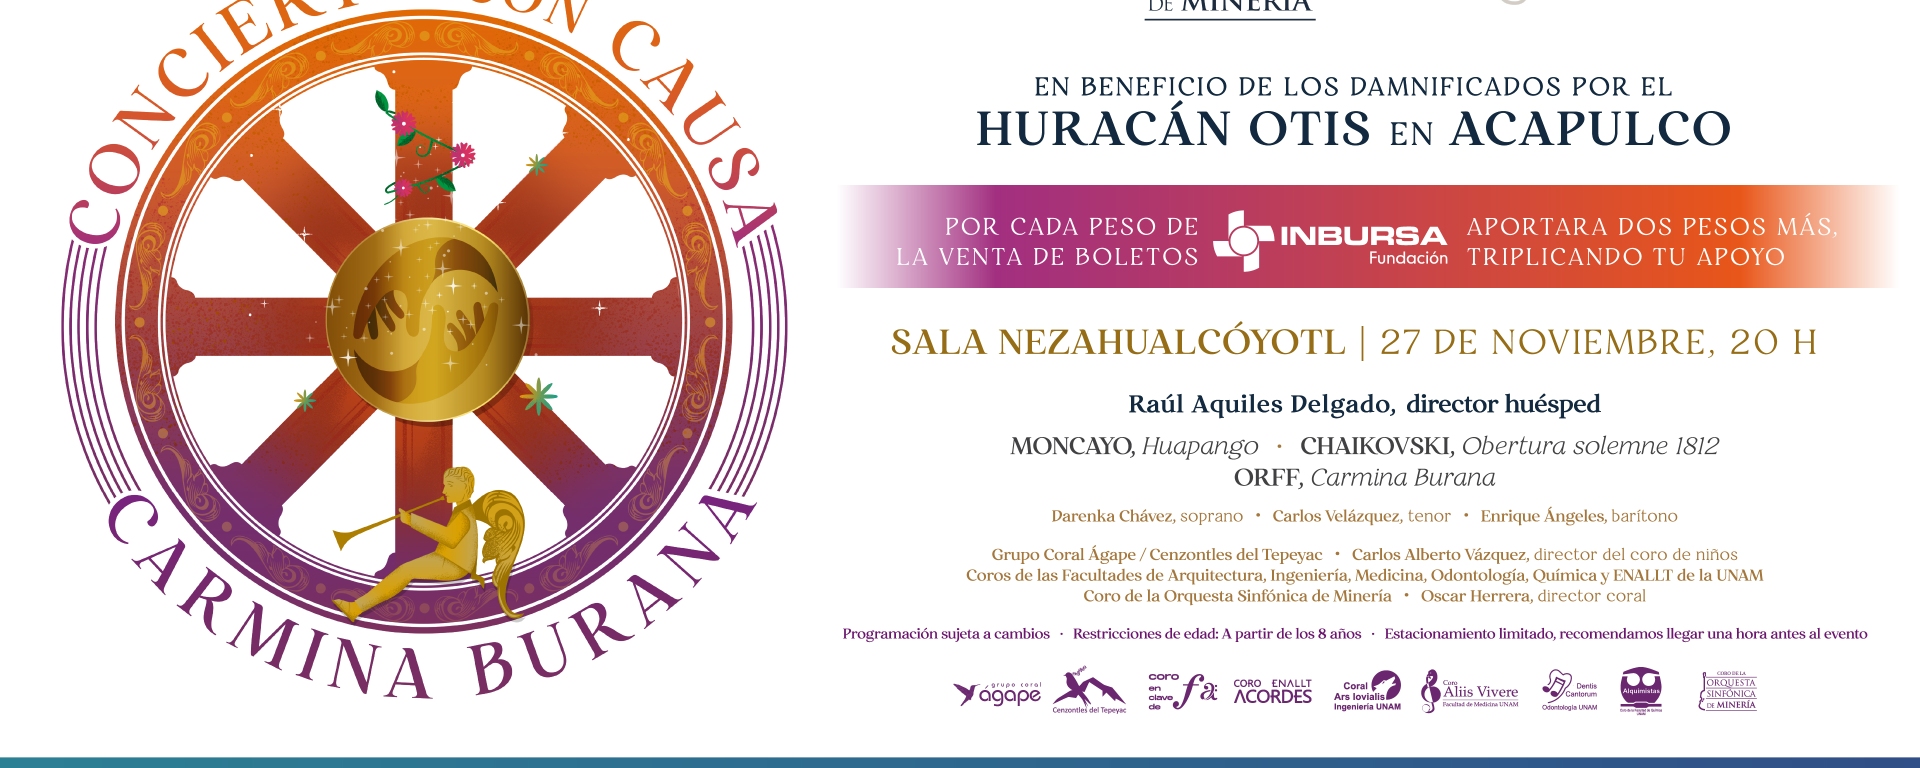 La Orquesta Sinfónica de Minería presenta un concierto en beneficio de las personas damnificadas por Otis en Acapulco, Guerrero | Imagen: Cortesía OSM/Spinto